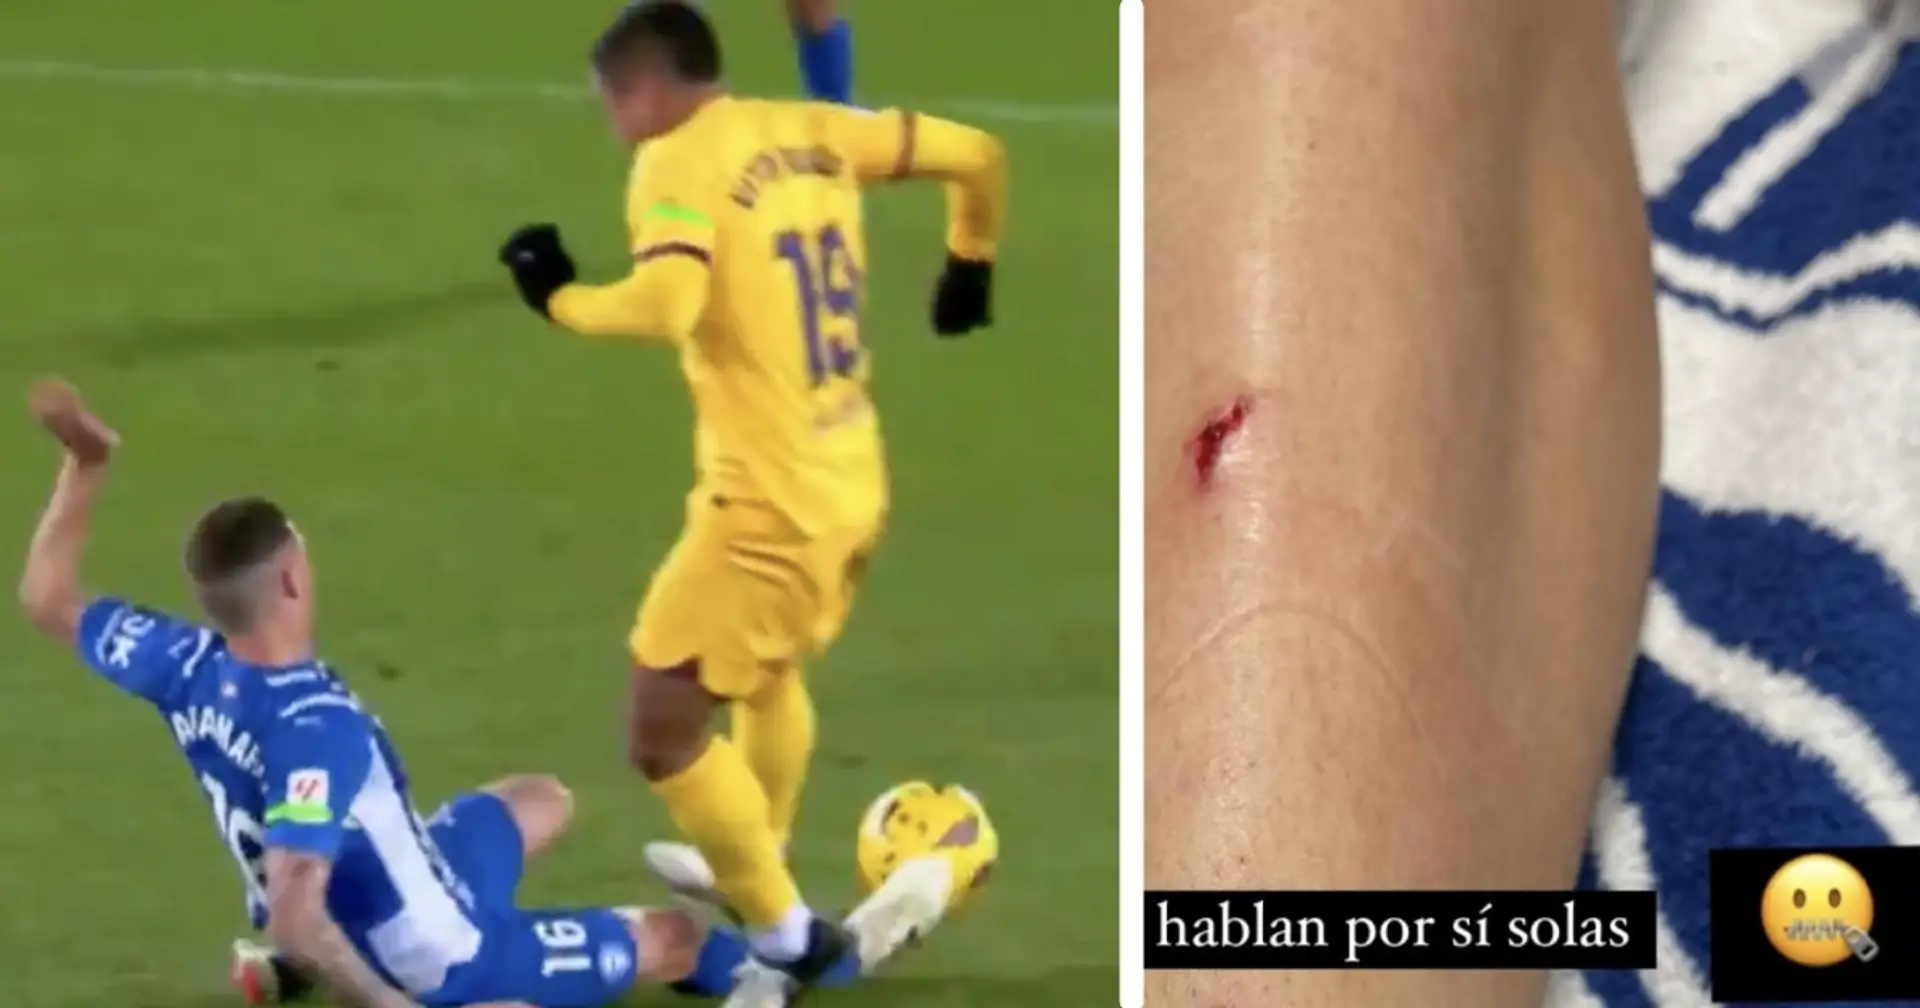 Le défenseur d'Alaves montre une jambe blessée au milieu du carton rouge controversé de Vitor Roque